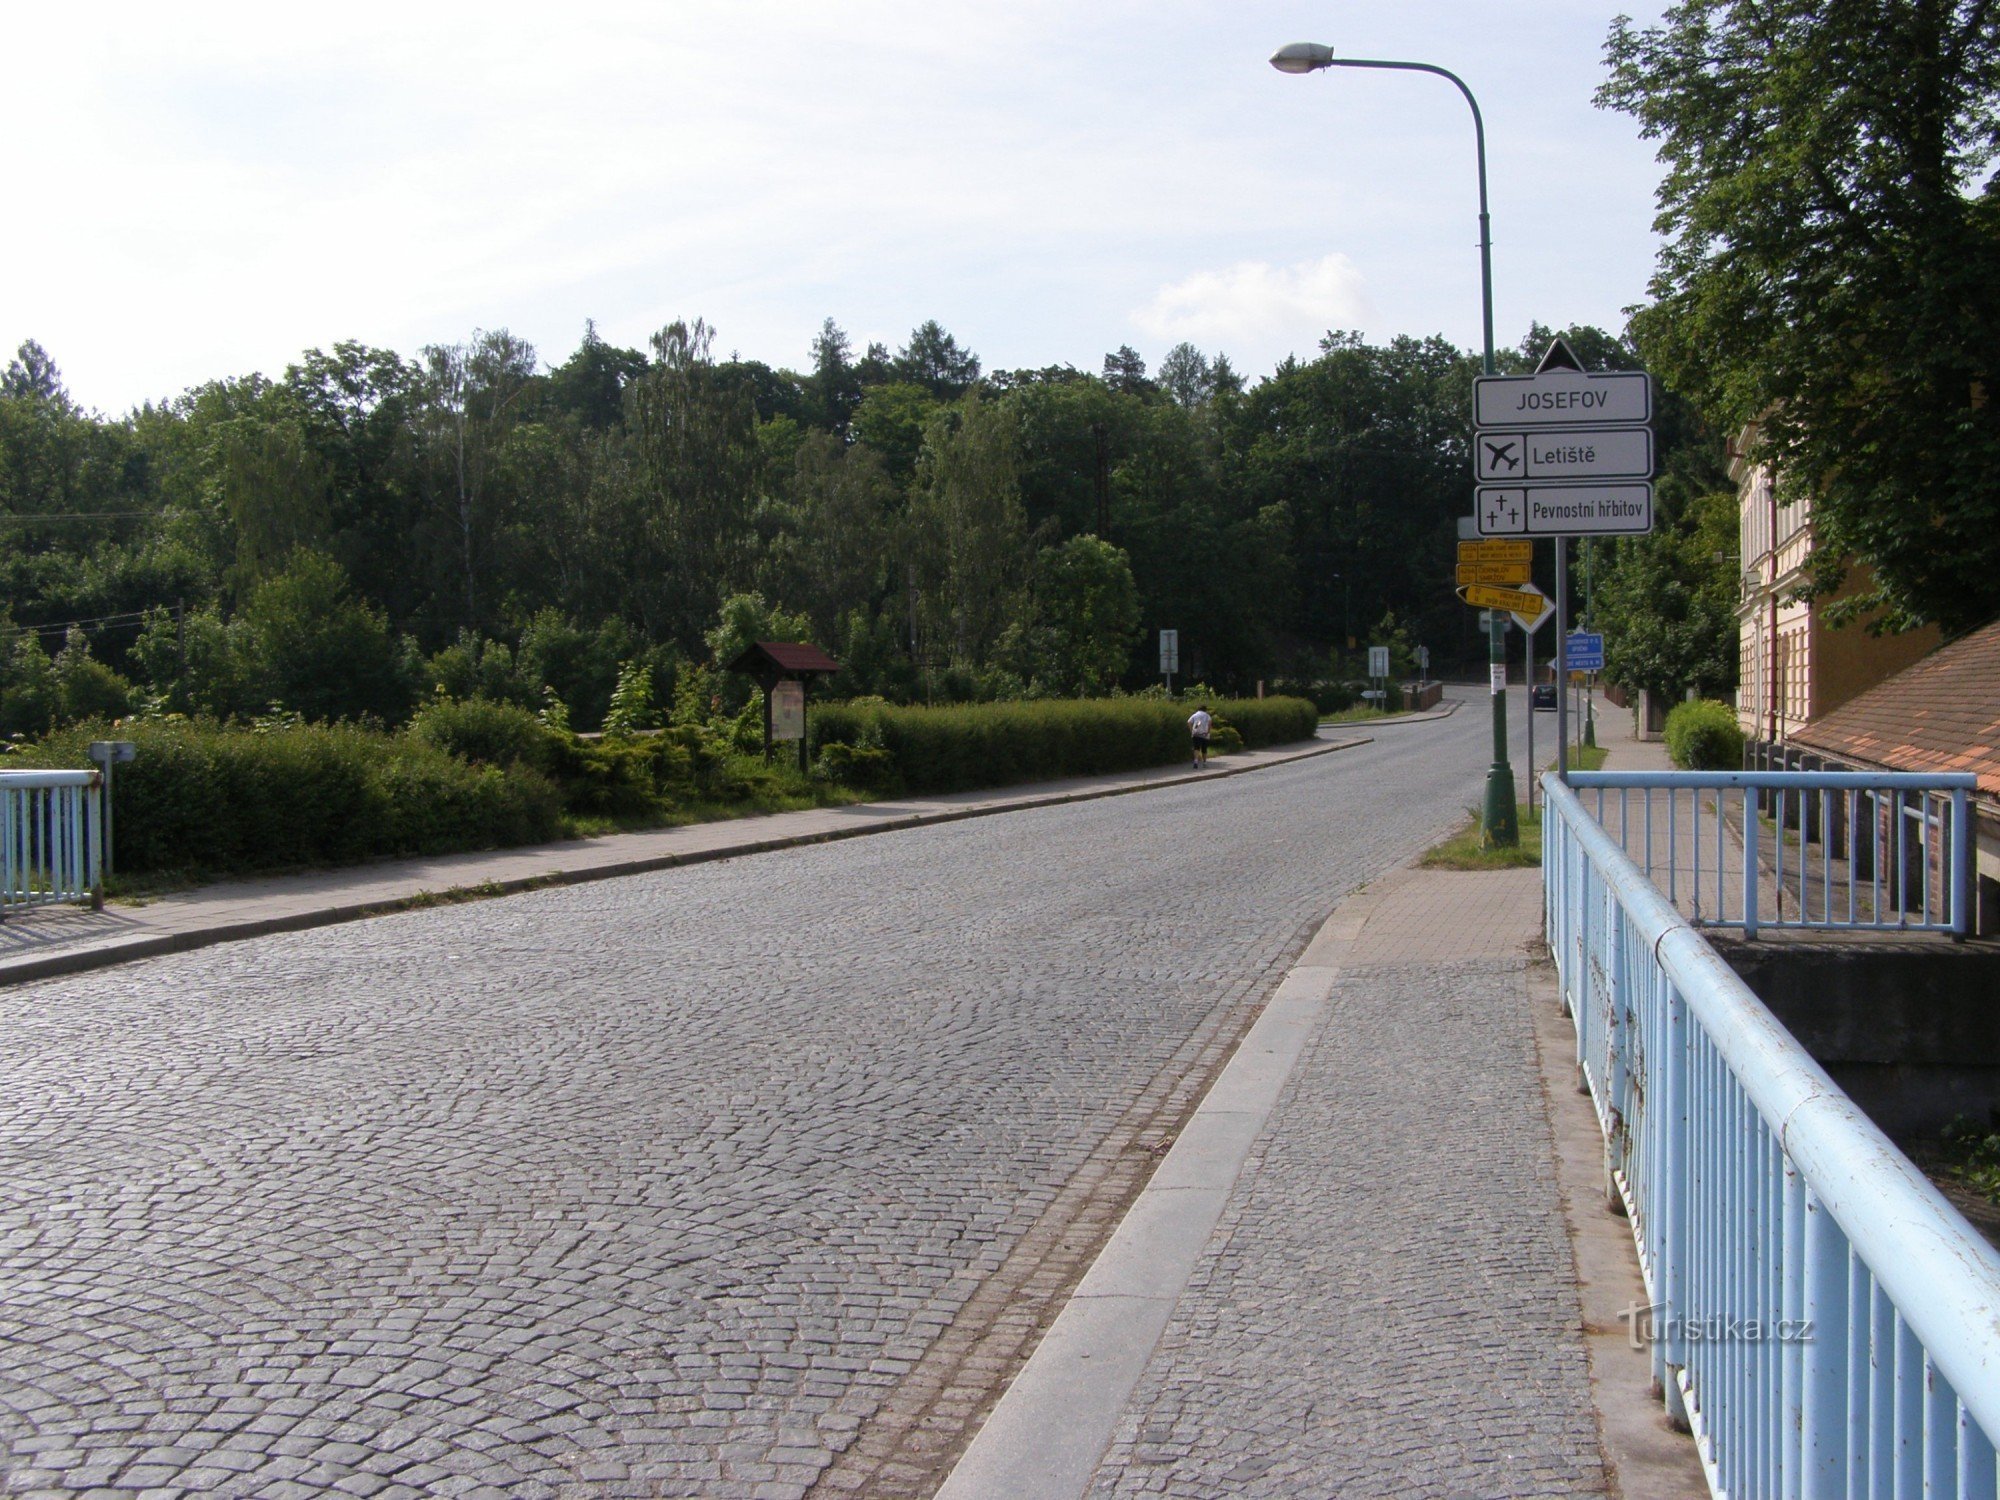 pyörämatkailun risteys - Josefov, lähellä siltaa